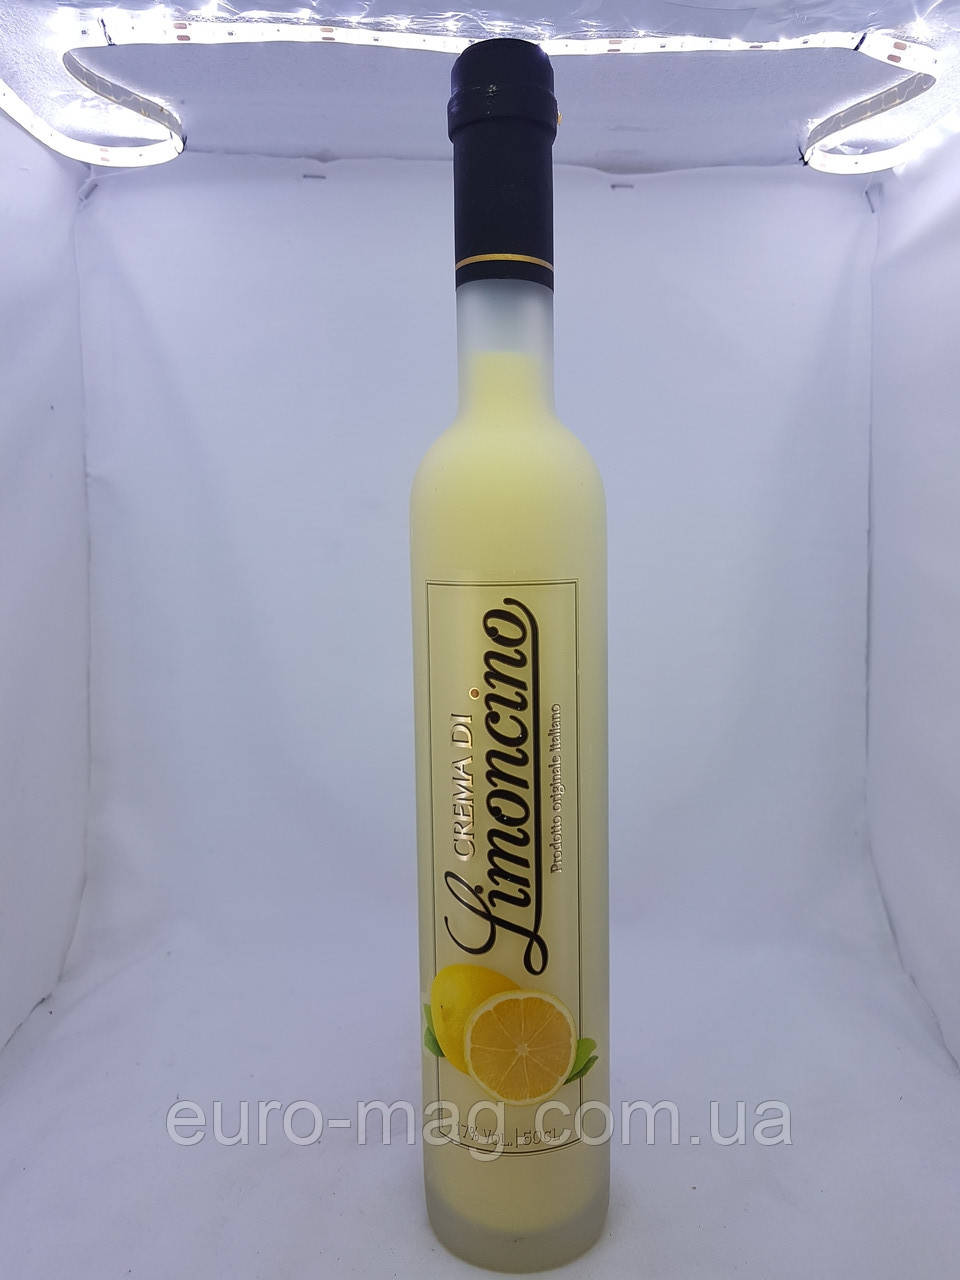 Ликер Crema di Limoncino, 0.5l Лимончино: продажа, цена в Киеве. Крепкие  алкогольные напитки от 